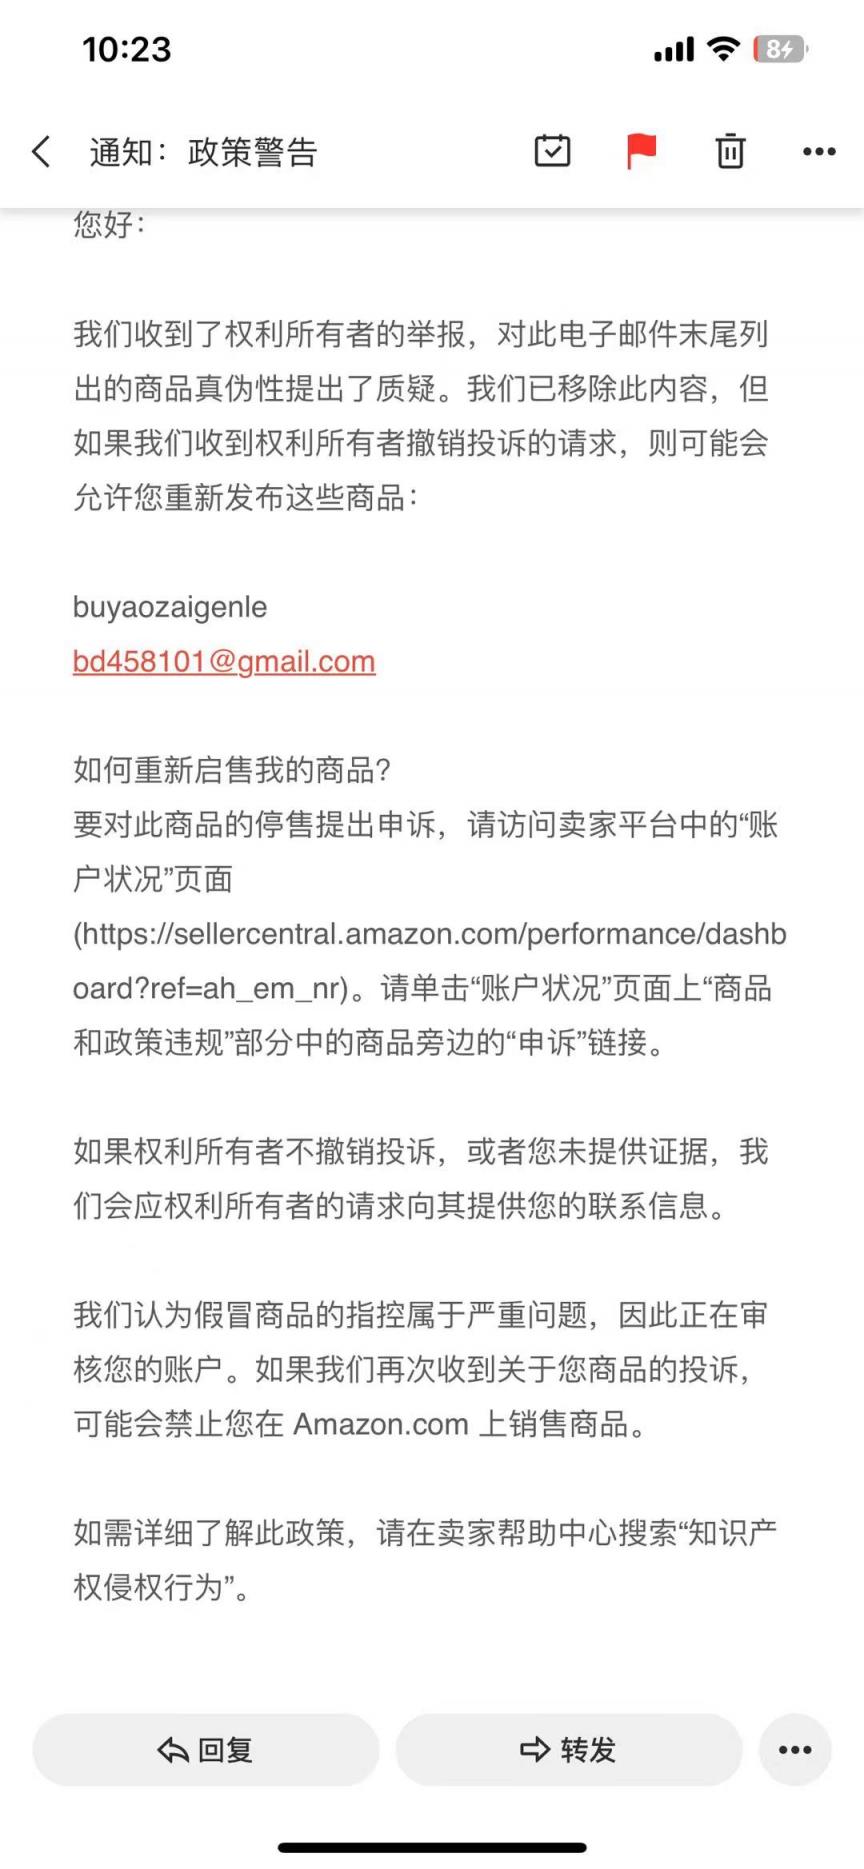 https://wearesellers.oss-cn-shenzhen.aliyuncs.com/questions/20230525/efc525790902b15fe1cafe506b8c2e1a.jpg